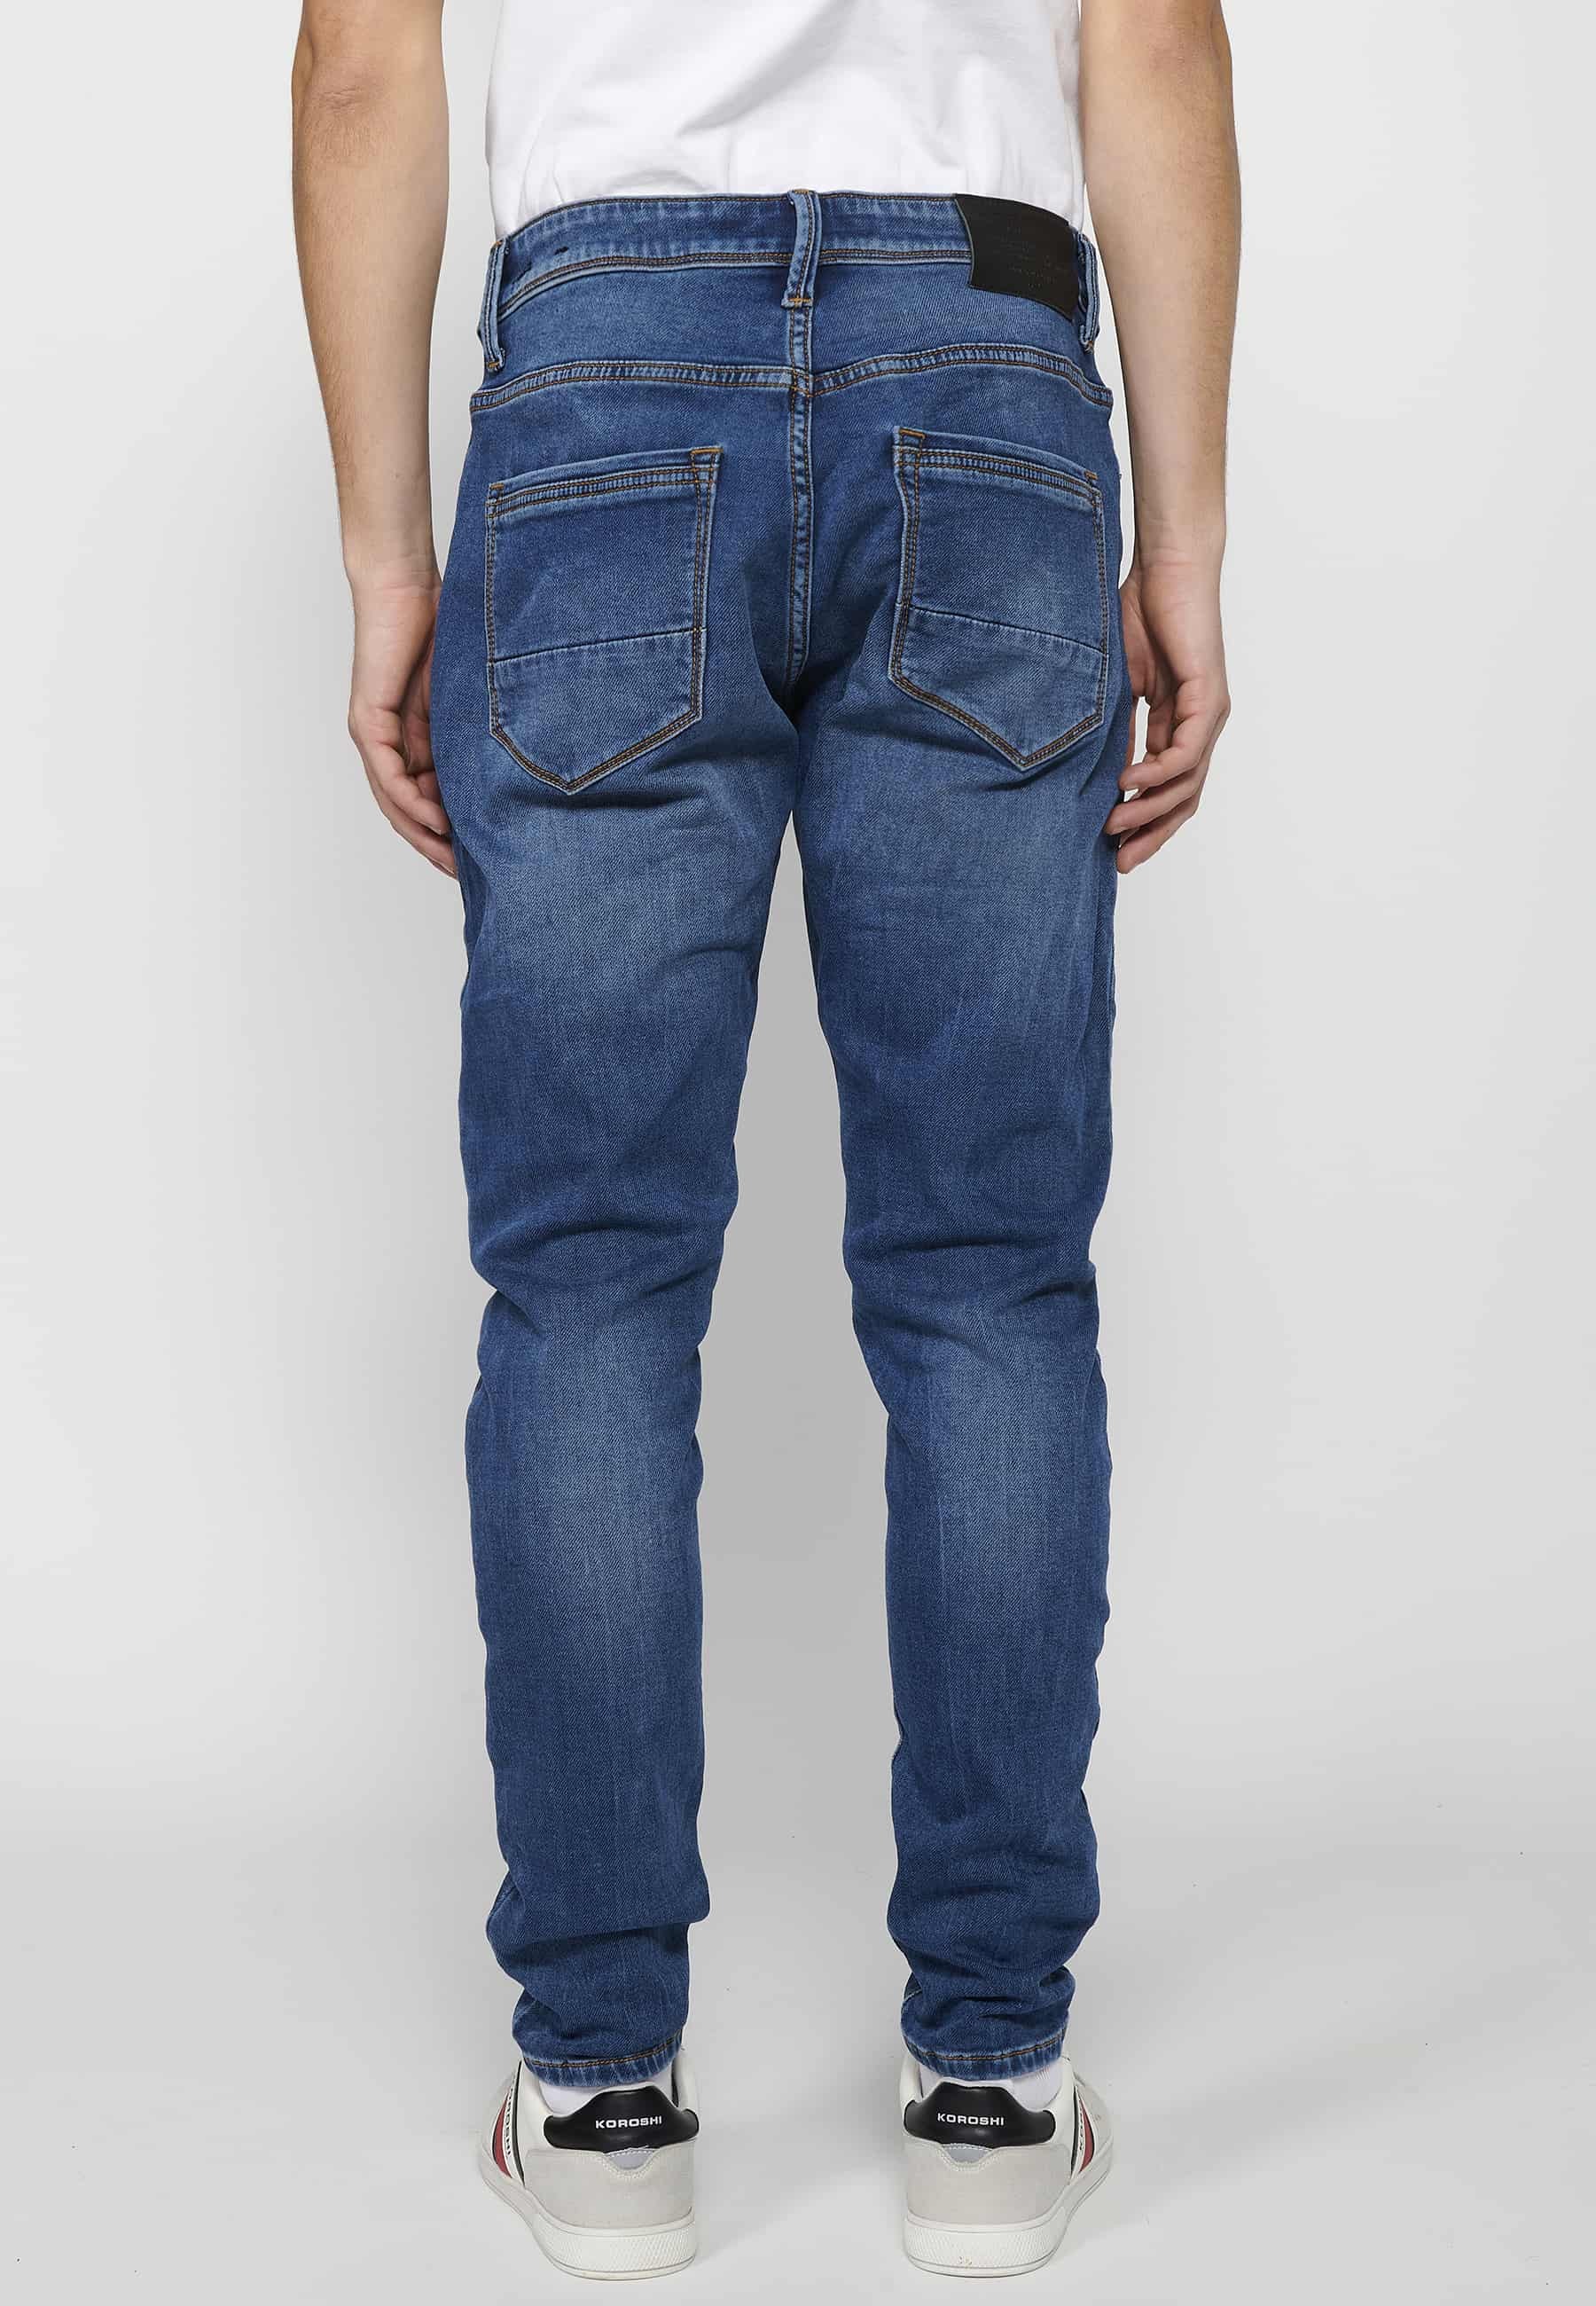 Pantalons llargs jeans llargs low rise slim fit amb Tancament davanter amb cremallera i botó de Color Blau per a Home 2